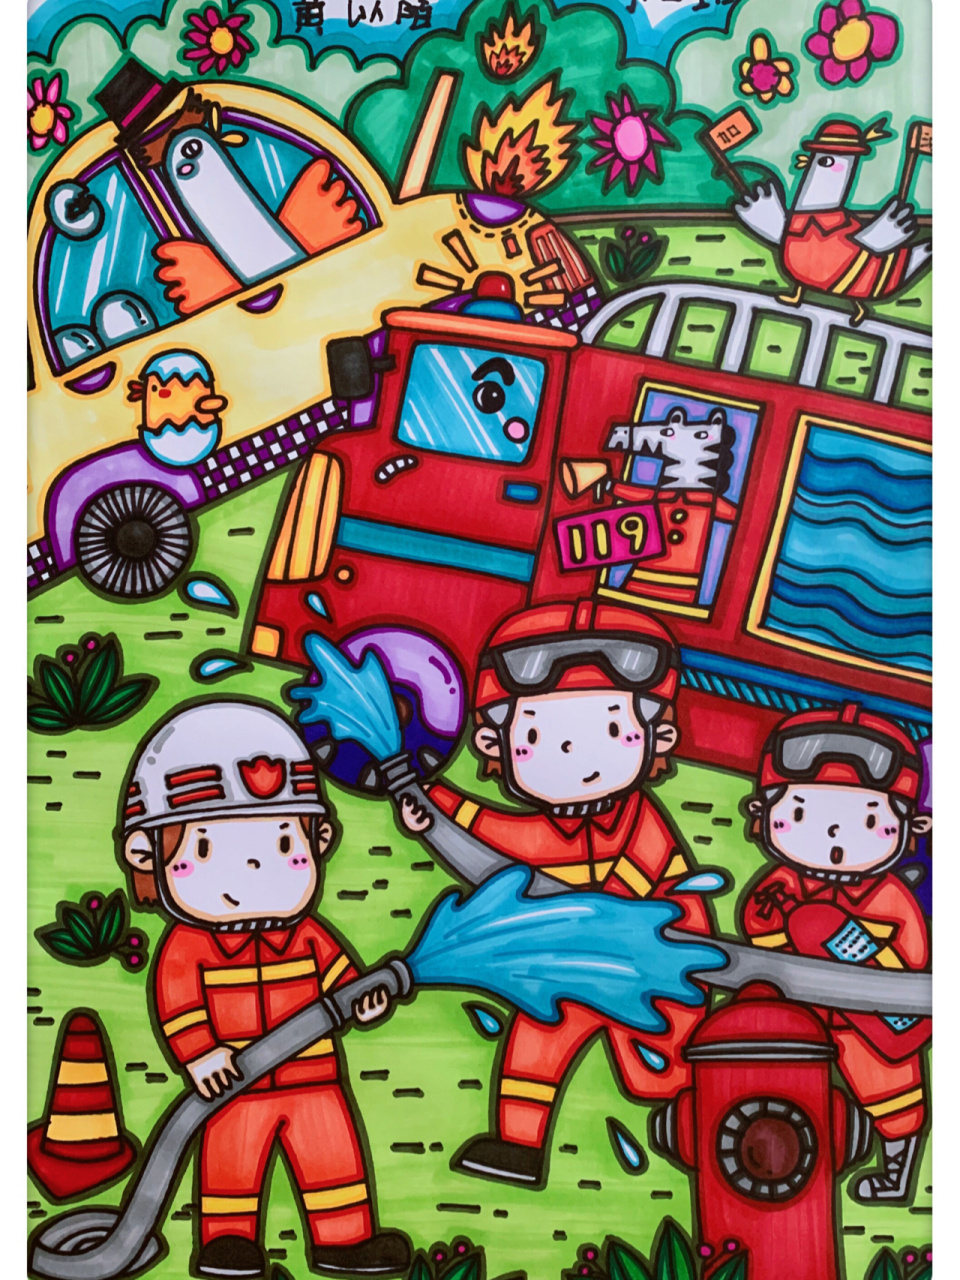 消防安全主题儿童画(免费提供线稿) 幼儿园布置的消防安全主题的创意